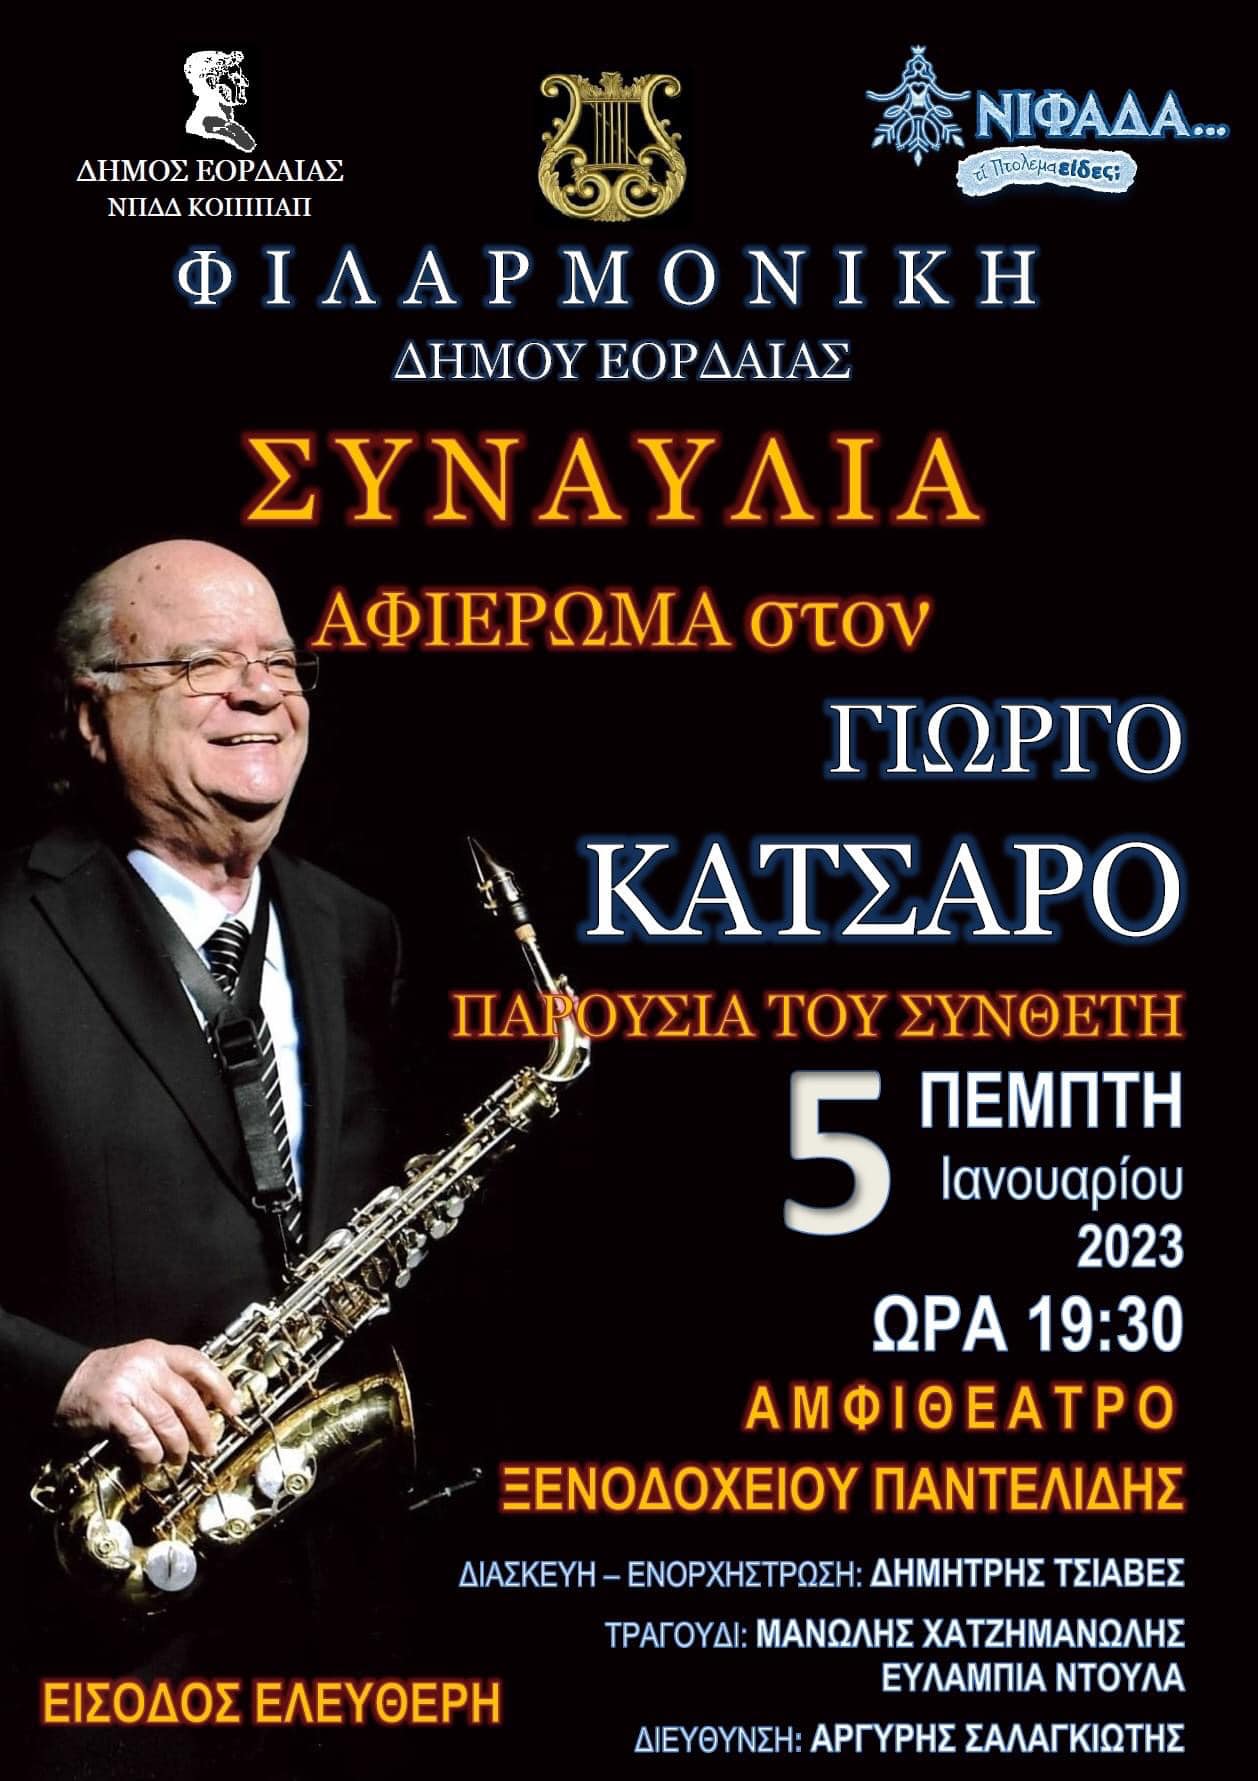 Μεγάλη συναυλία της Φιλαρμονικής Δήμου Εορδαίας - Αφιέρωμα στον συνθέτη Γιώργο Κατσαρό